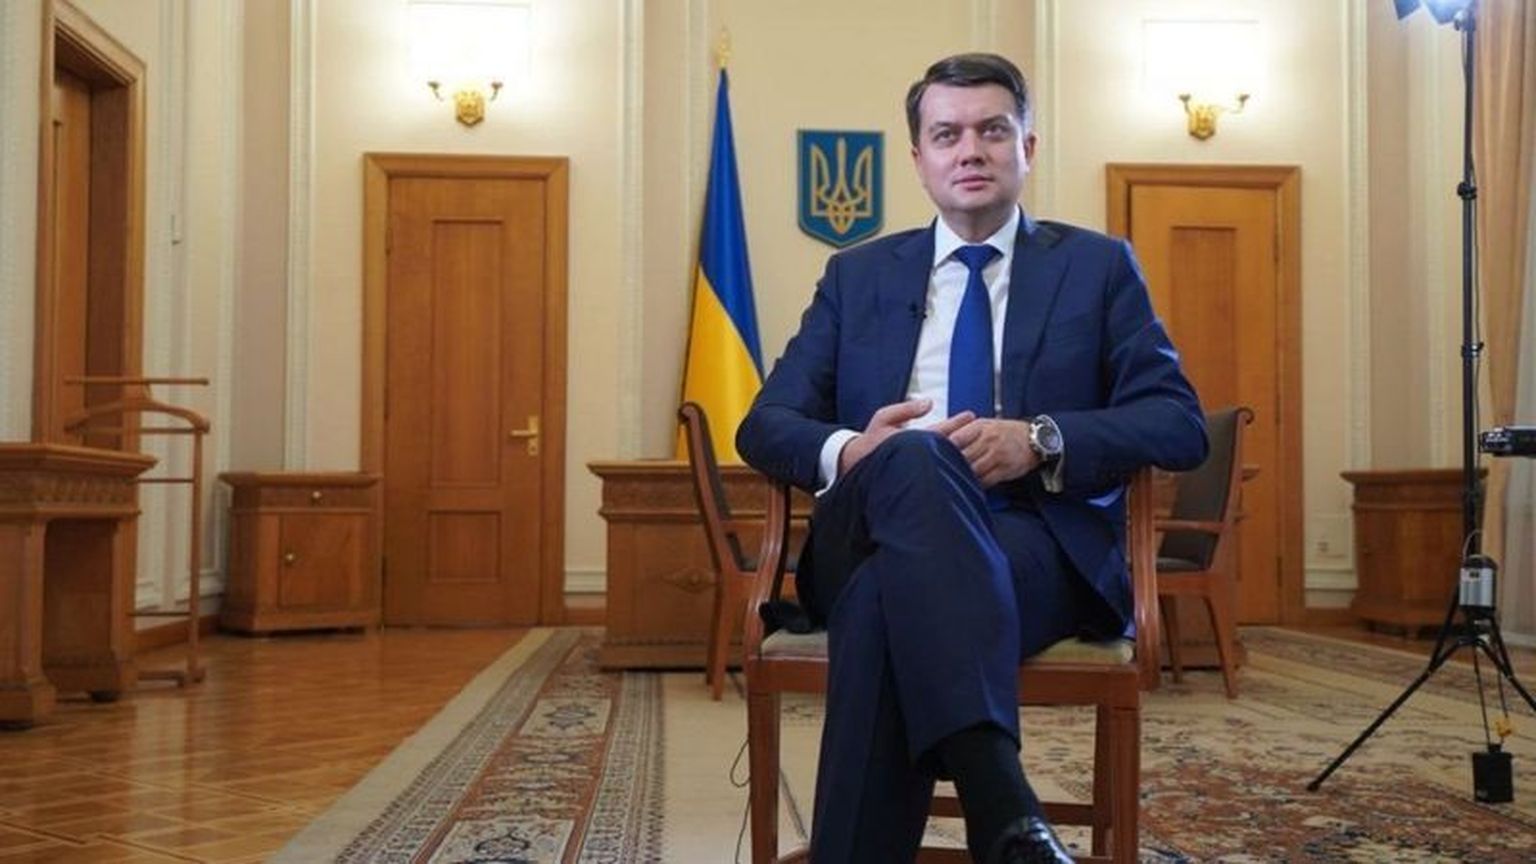 Экс-спикер Рады Дмитрий Разумков дал Би-би-си первое интервью после своей отставки и последнее в кабинете главы украинского парламента.